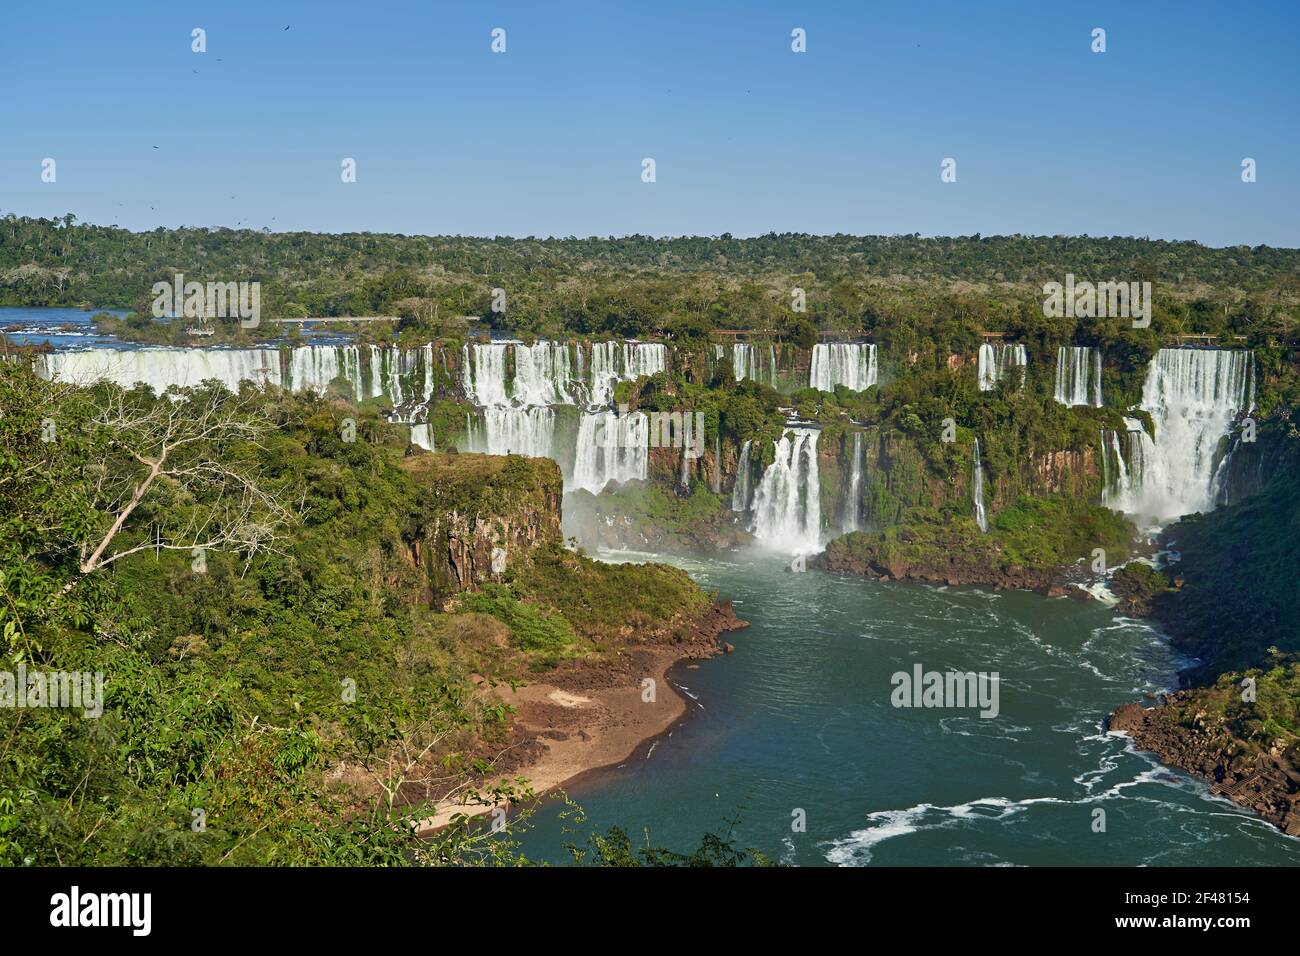 Le Cascate di Iguazu o le Cascate di Iguacu, al confine tra Argentina e Brasile, sono le cascate più grandi del mondo. Cascata molto alta con acqua bianca in b Foto Stock